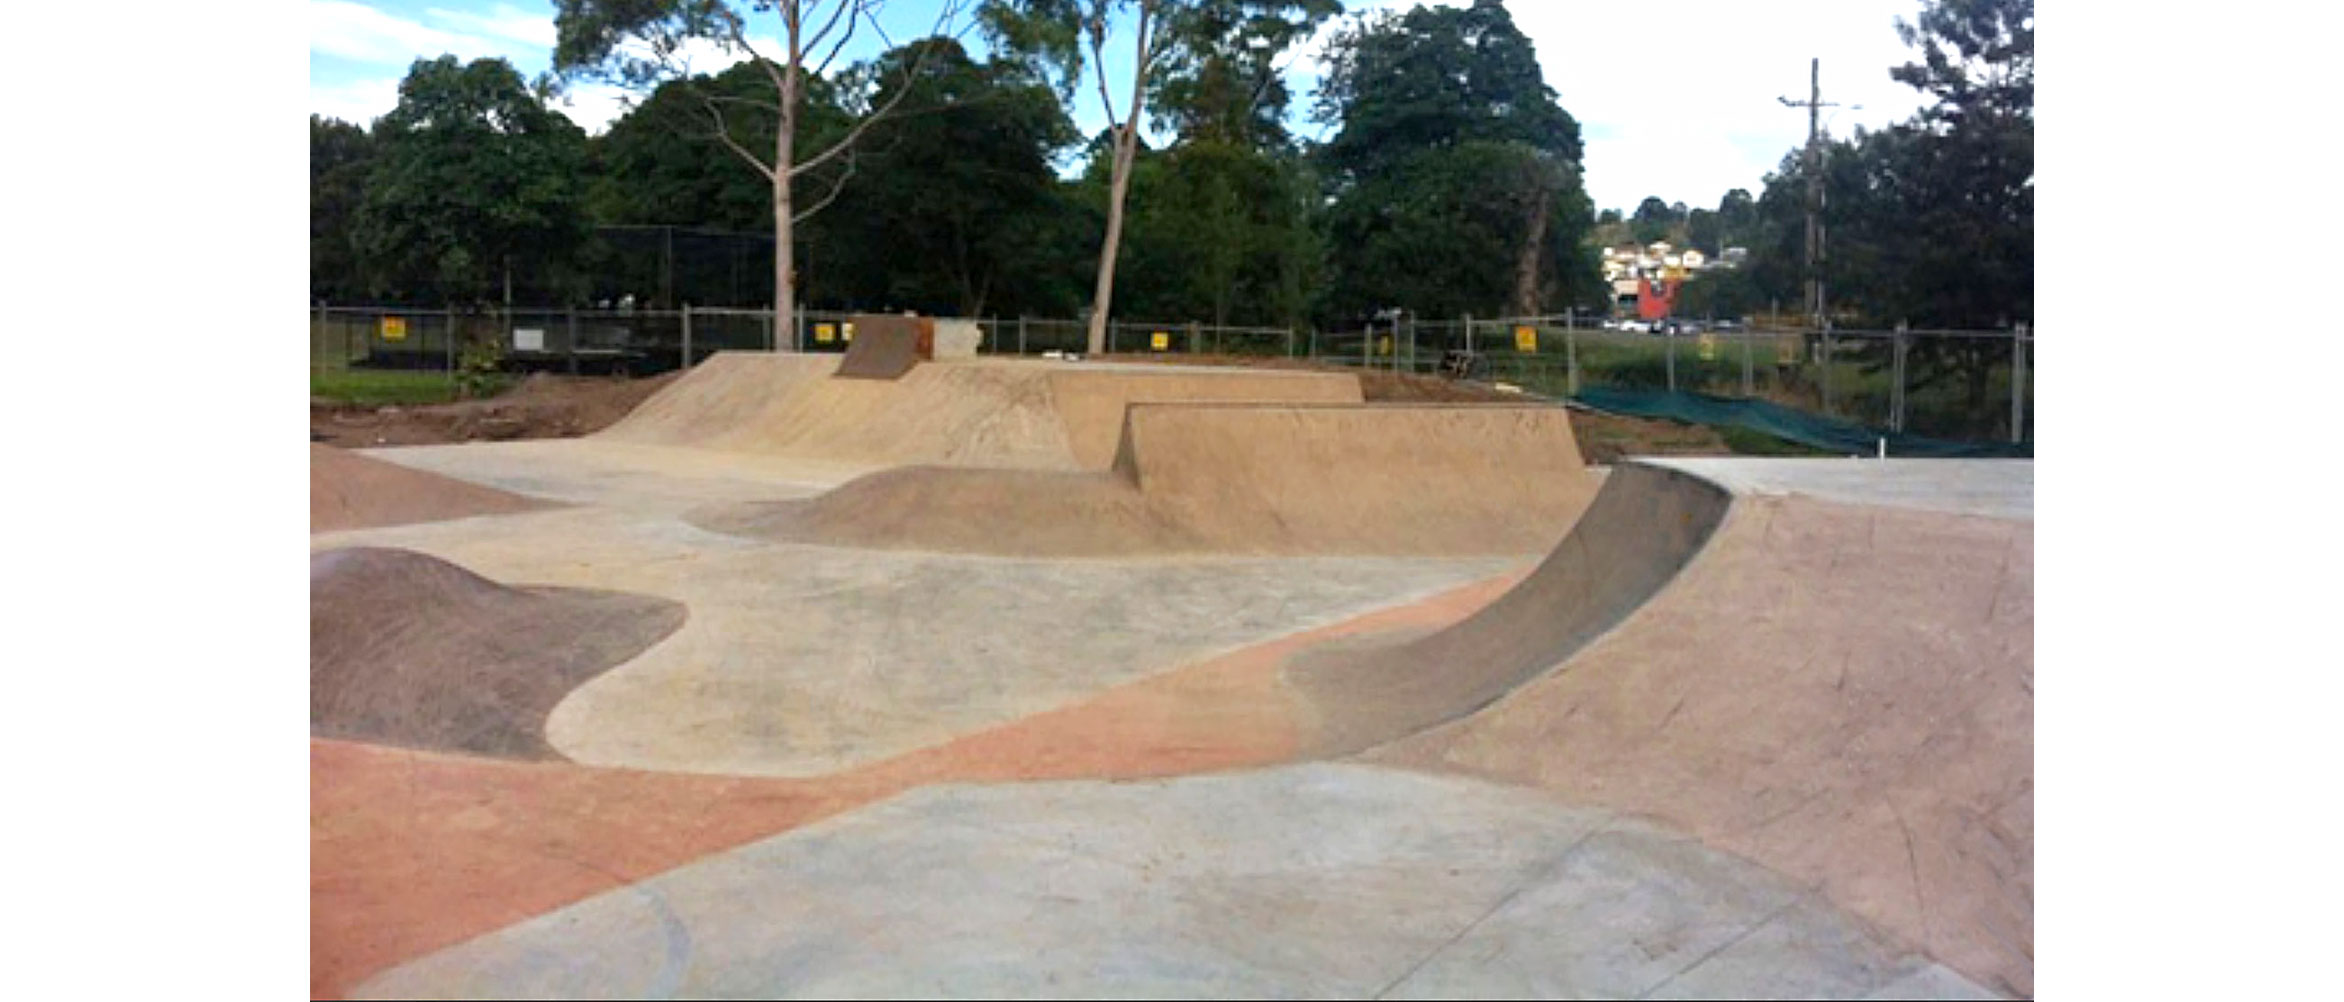 Wallsend skate park Newcastle, Concrete Skateparks